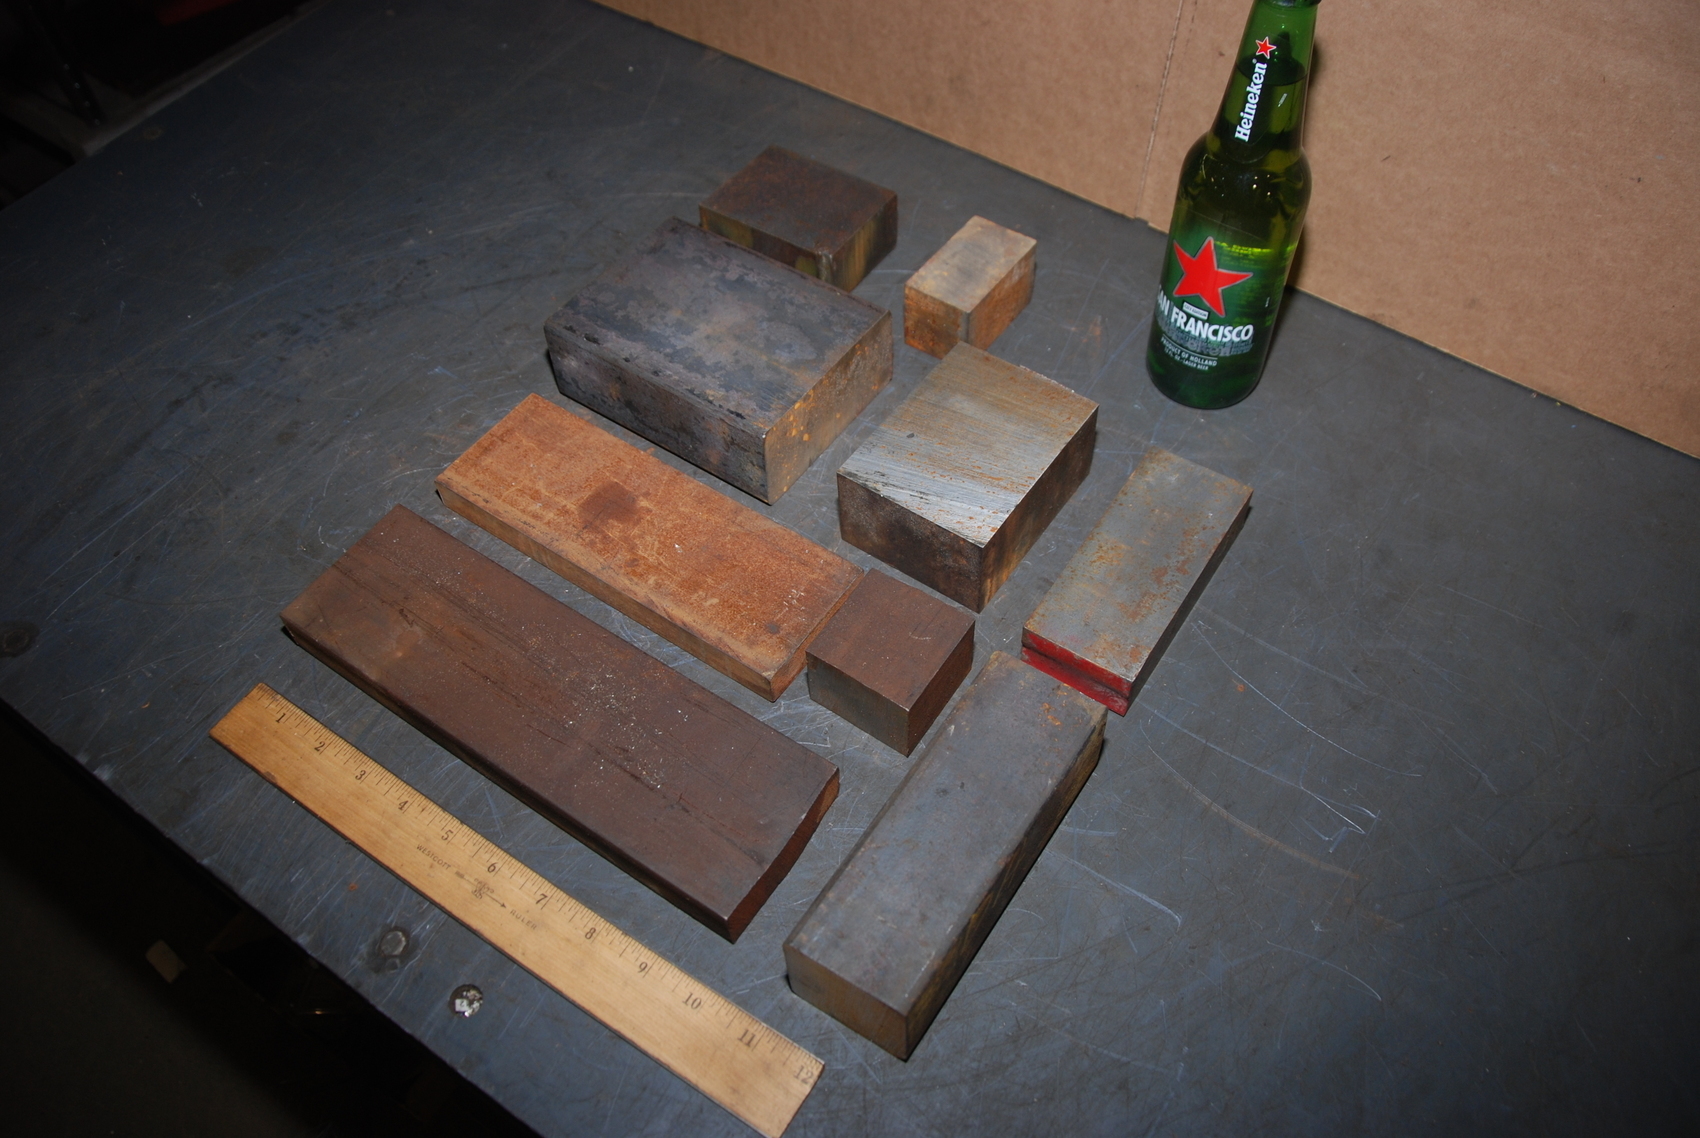 Lot of 9 steel Rectangular Bars for blacksmith anvil,49 lbs